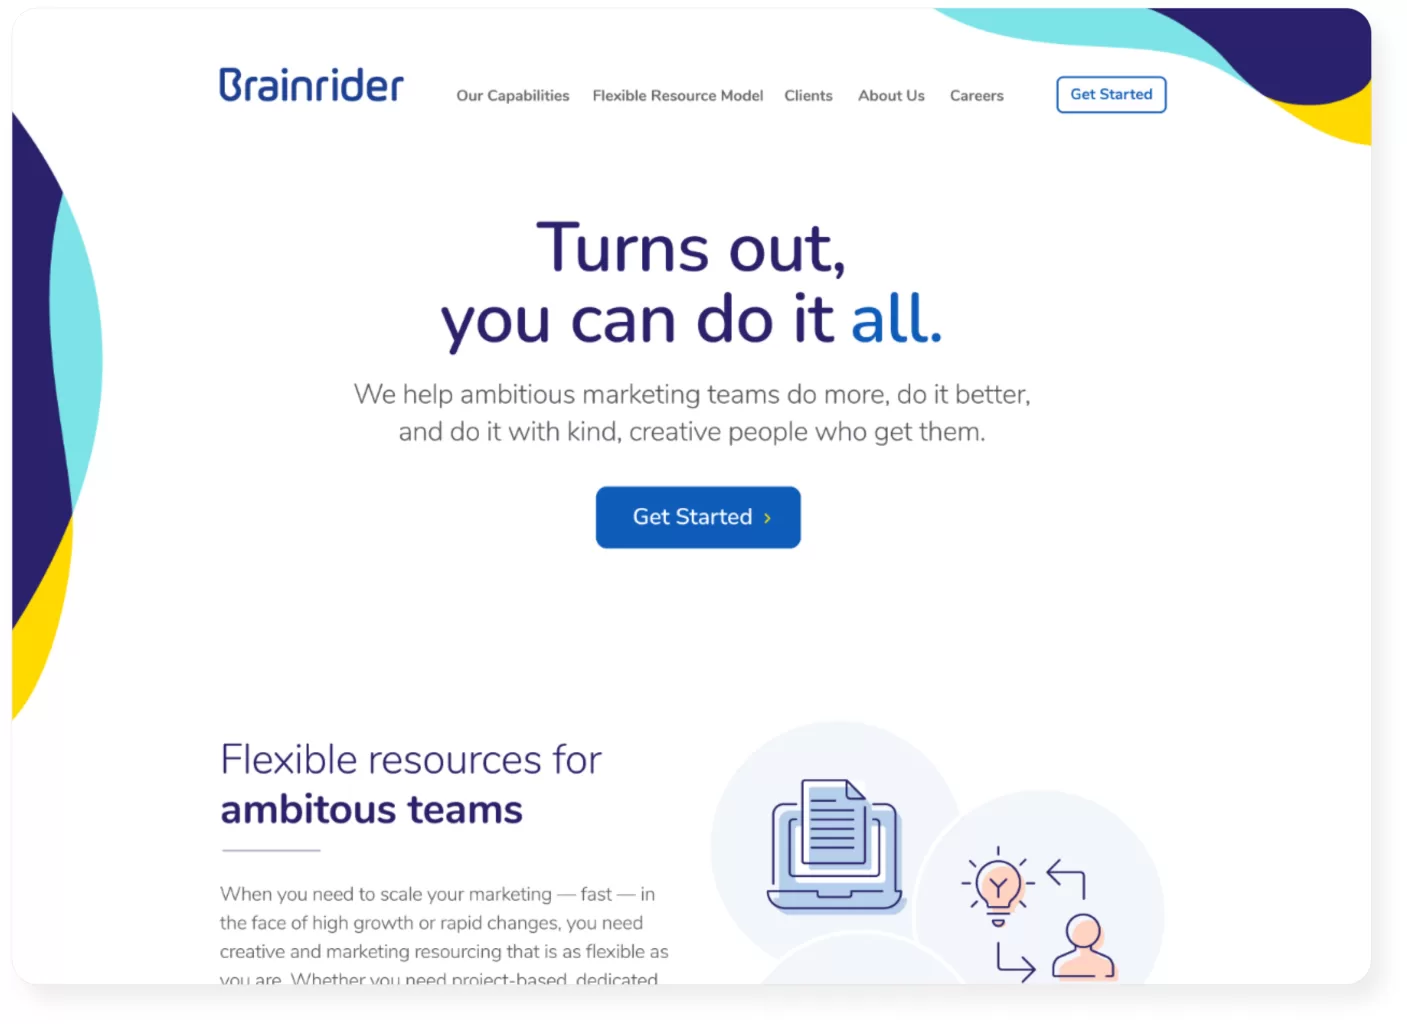 Brainrider homepage screenshot